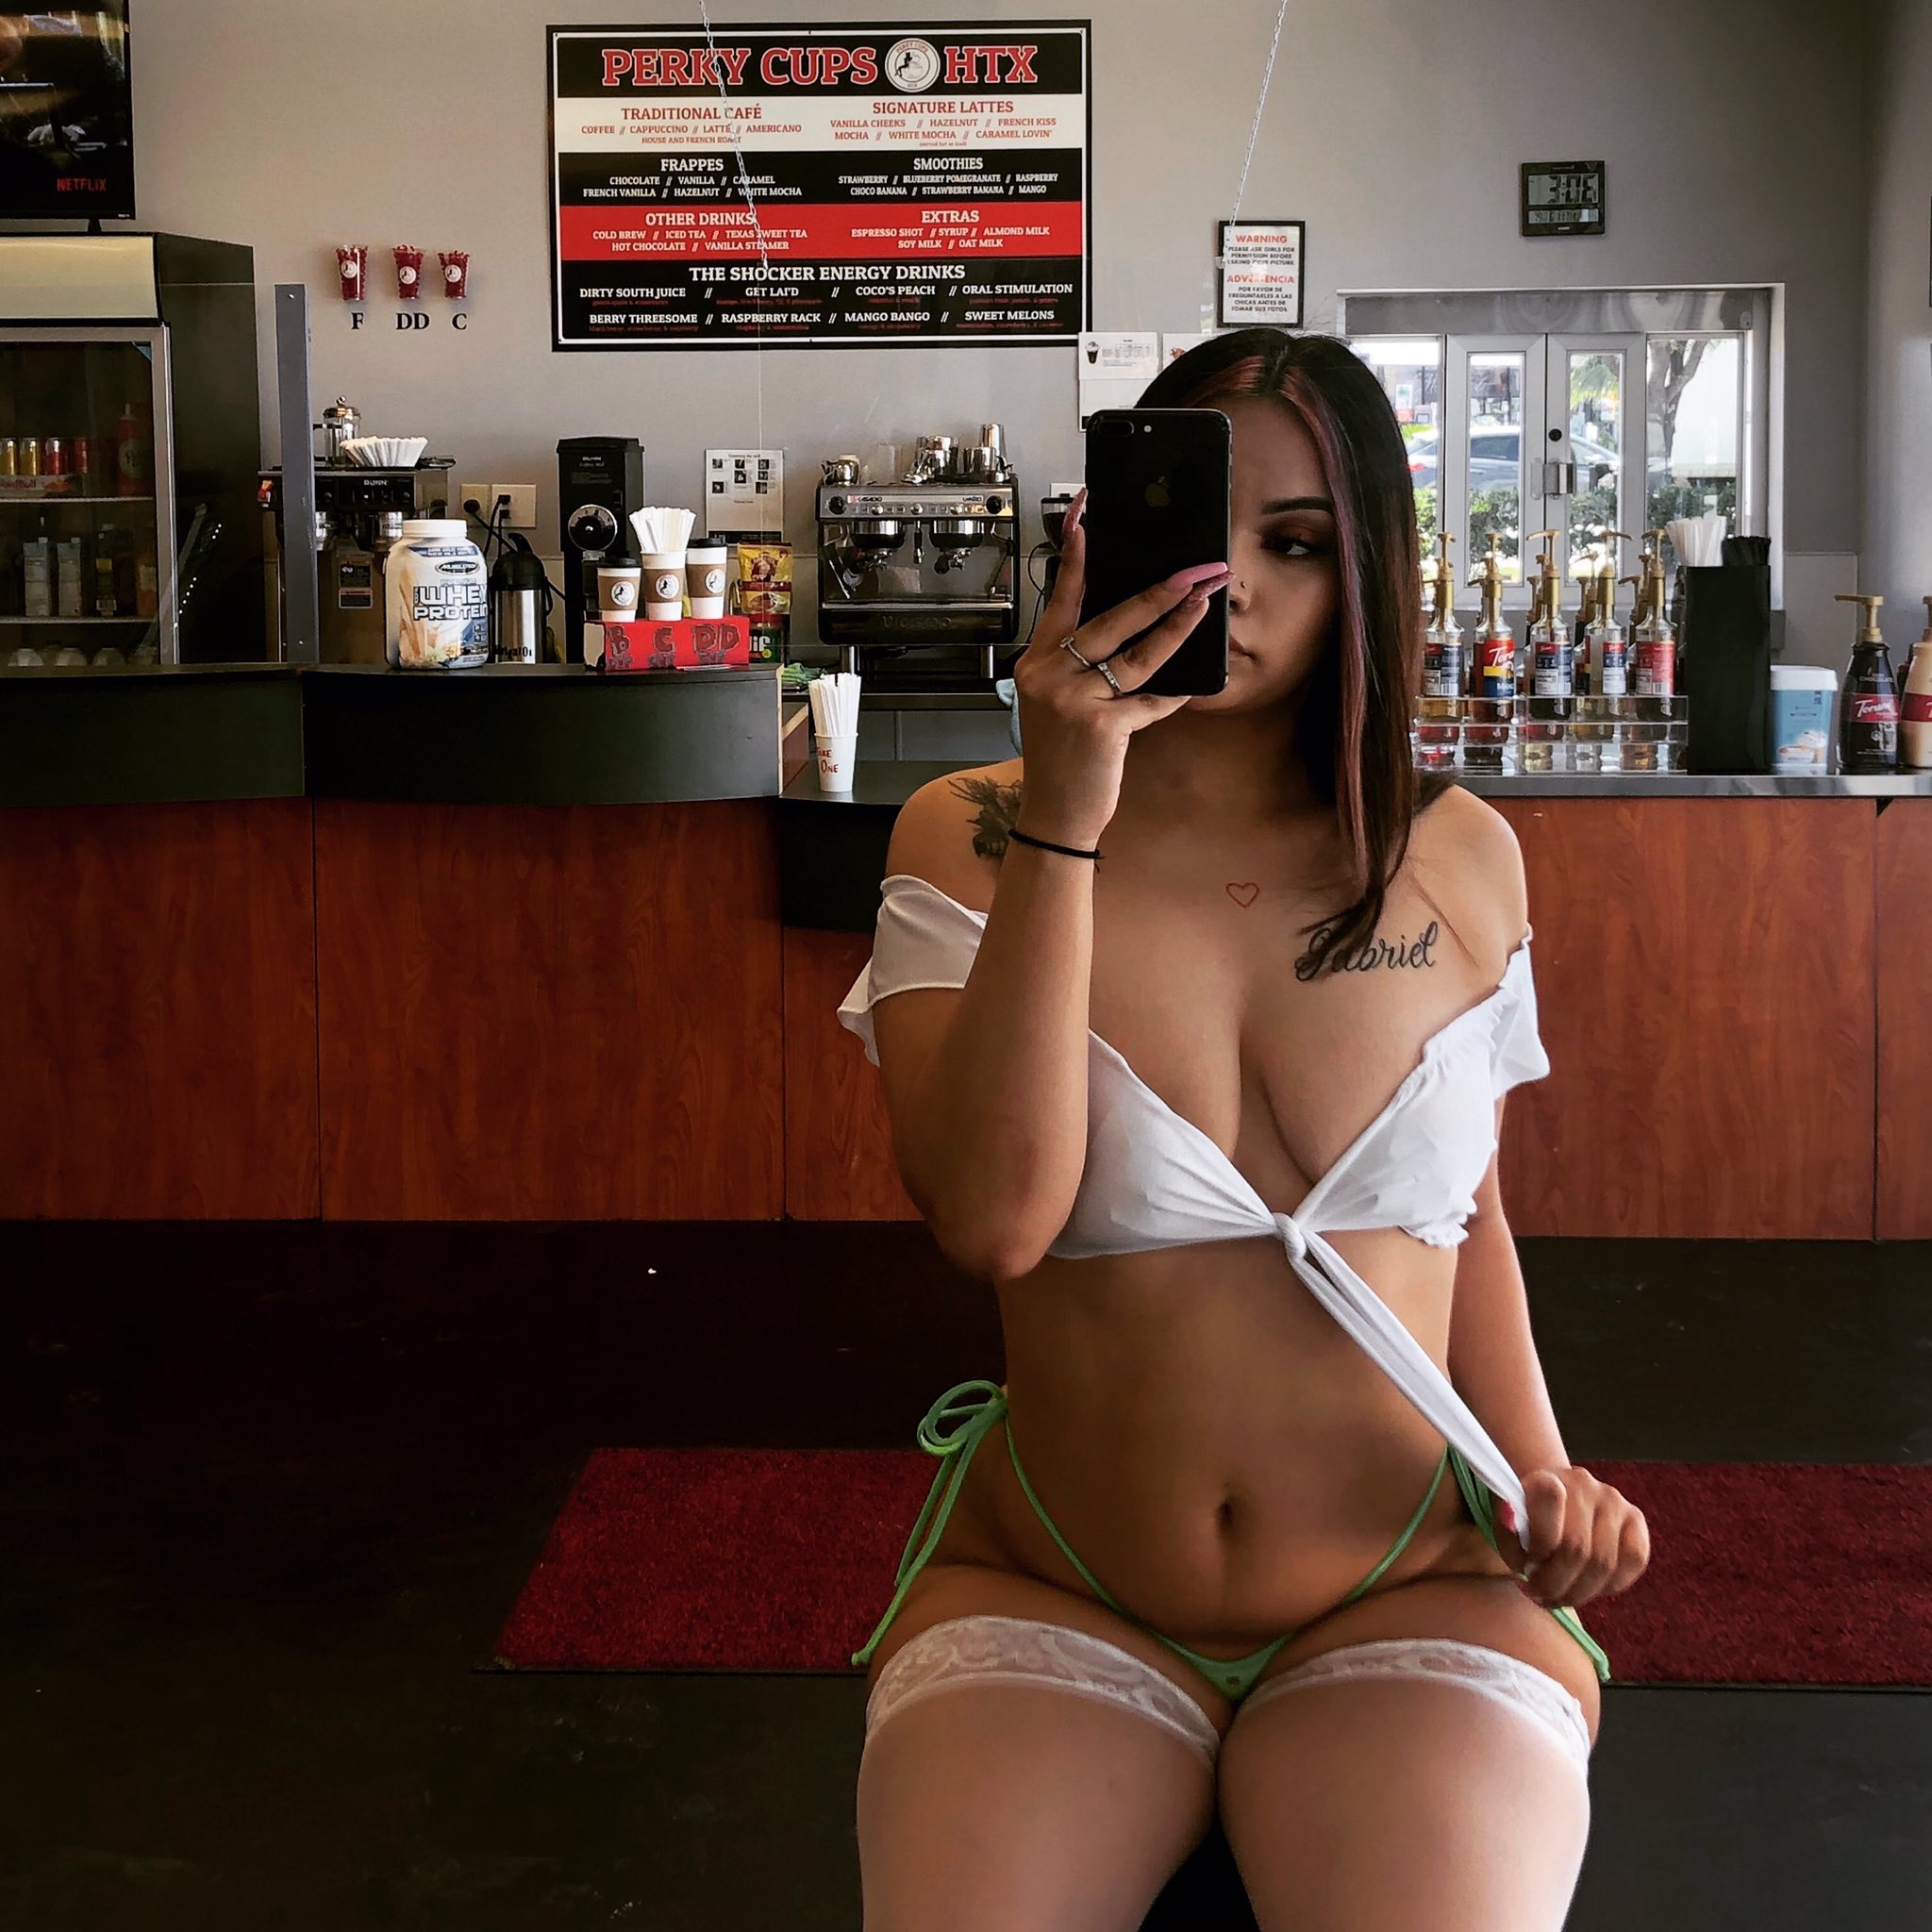 Hottest bikini barista